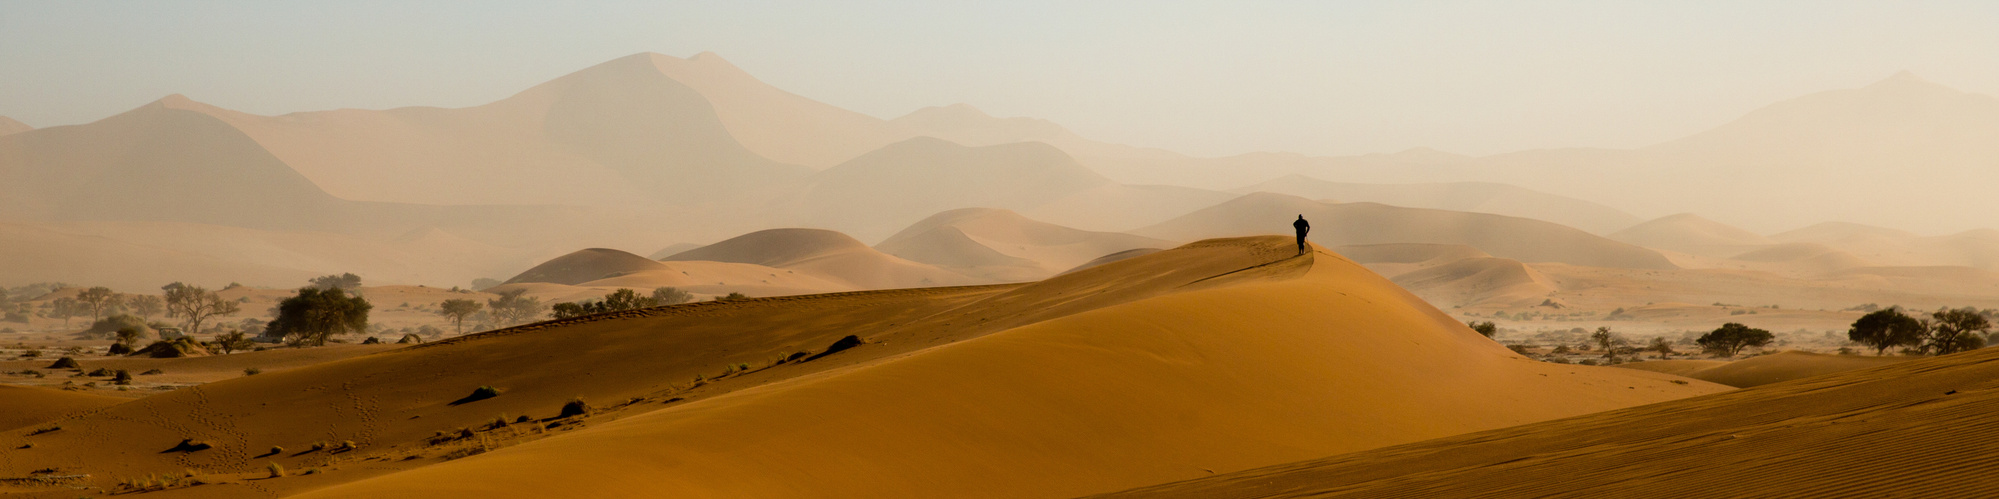 Sandstorm in the Namib Desert. Shot for BBC Travel, 2019.